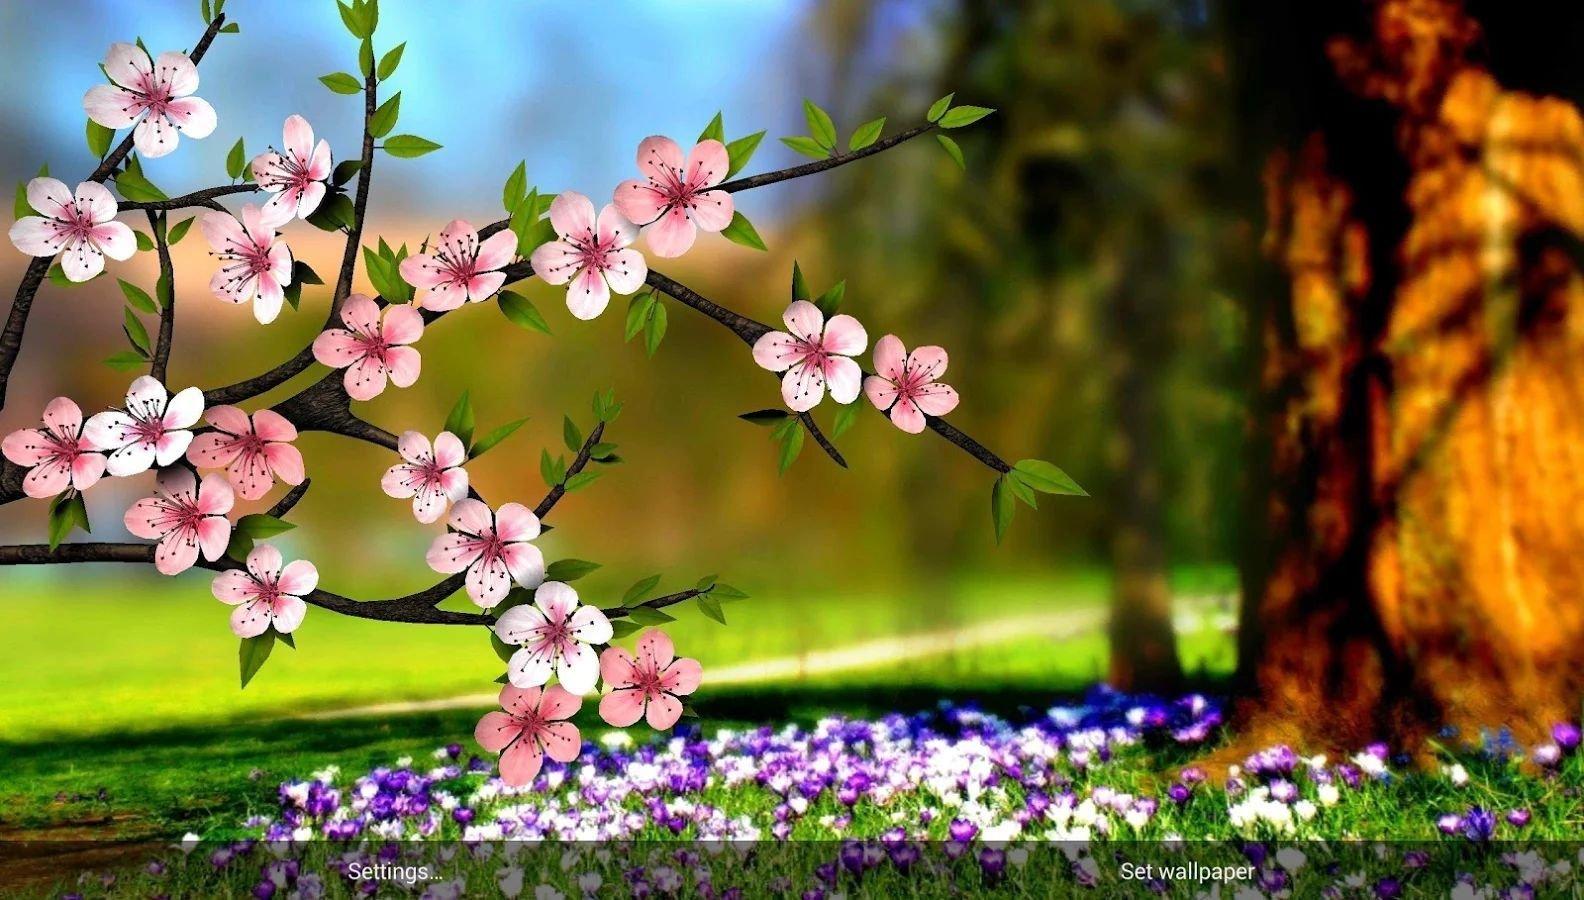 Весна в саду, или Самые яркие растения мая. Описание, фото — Ботаничка